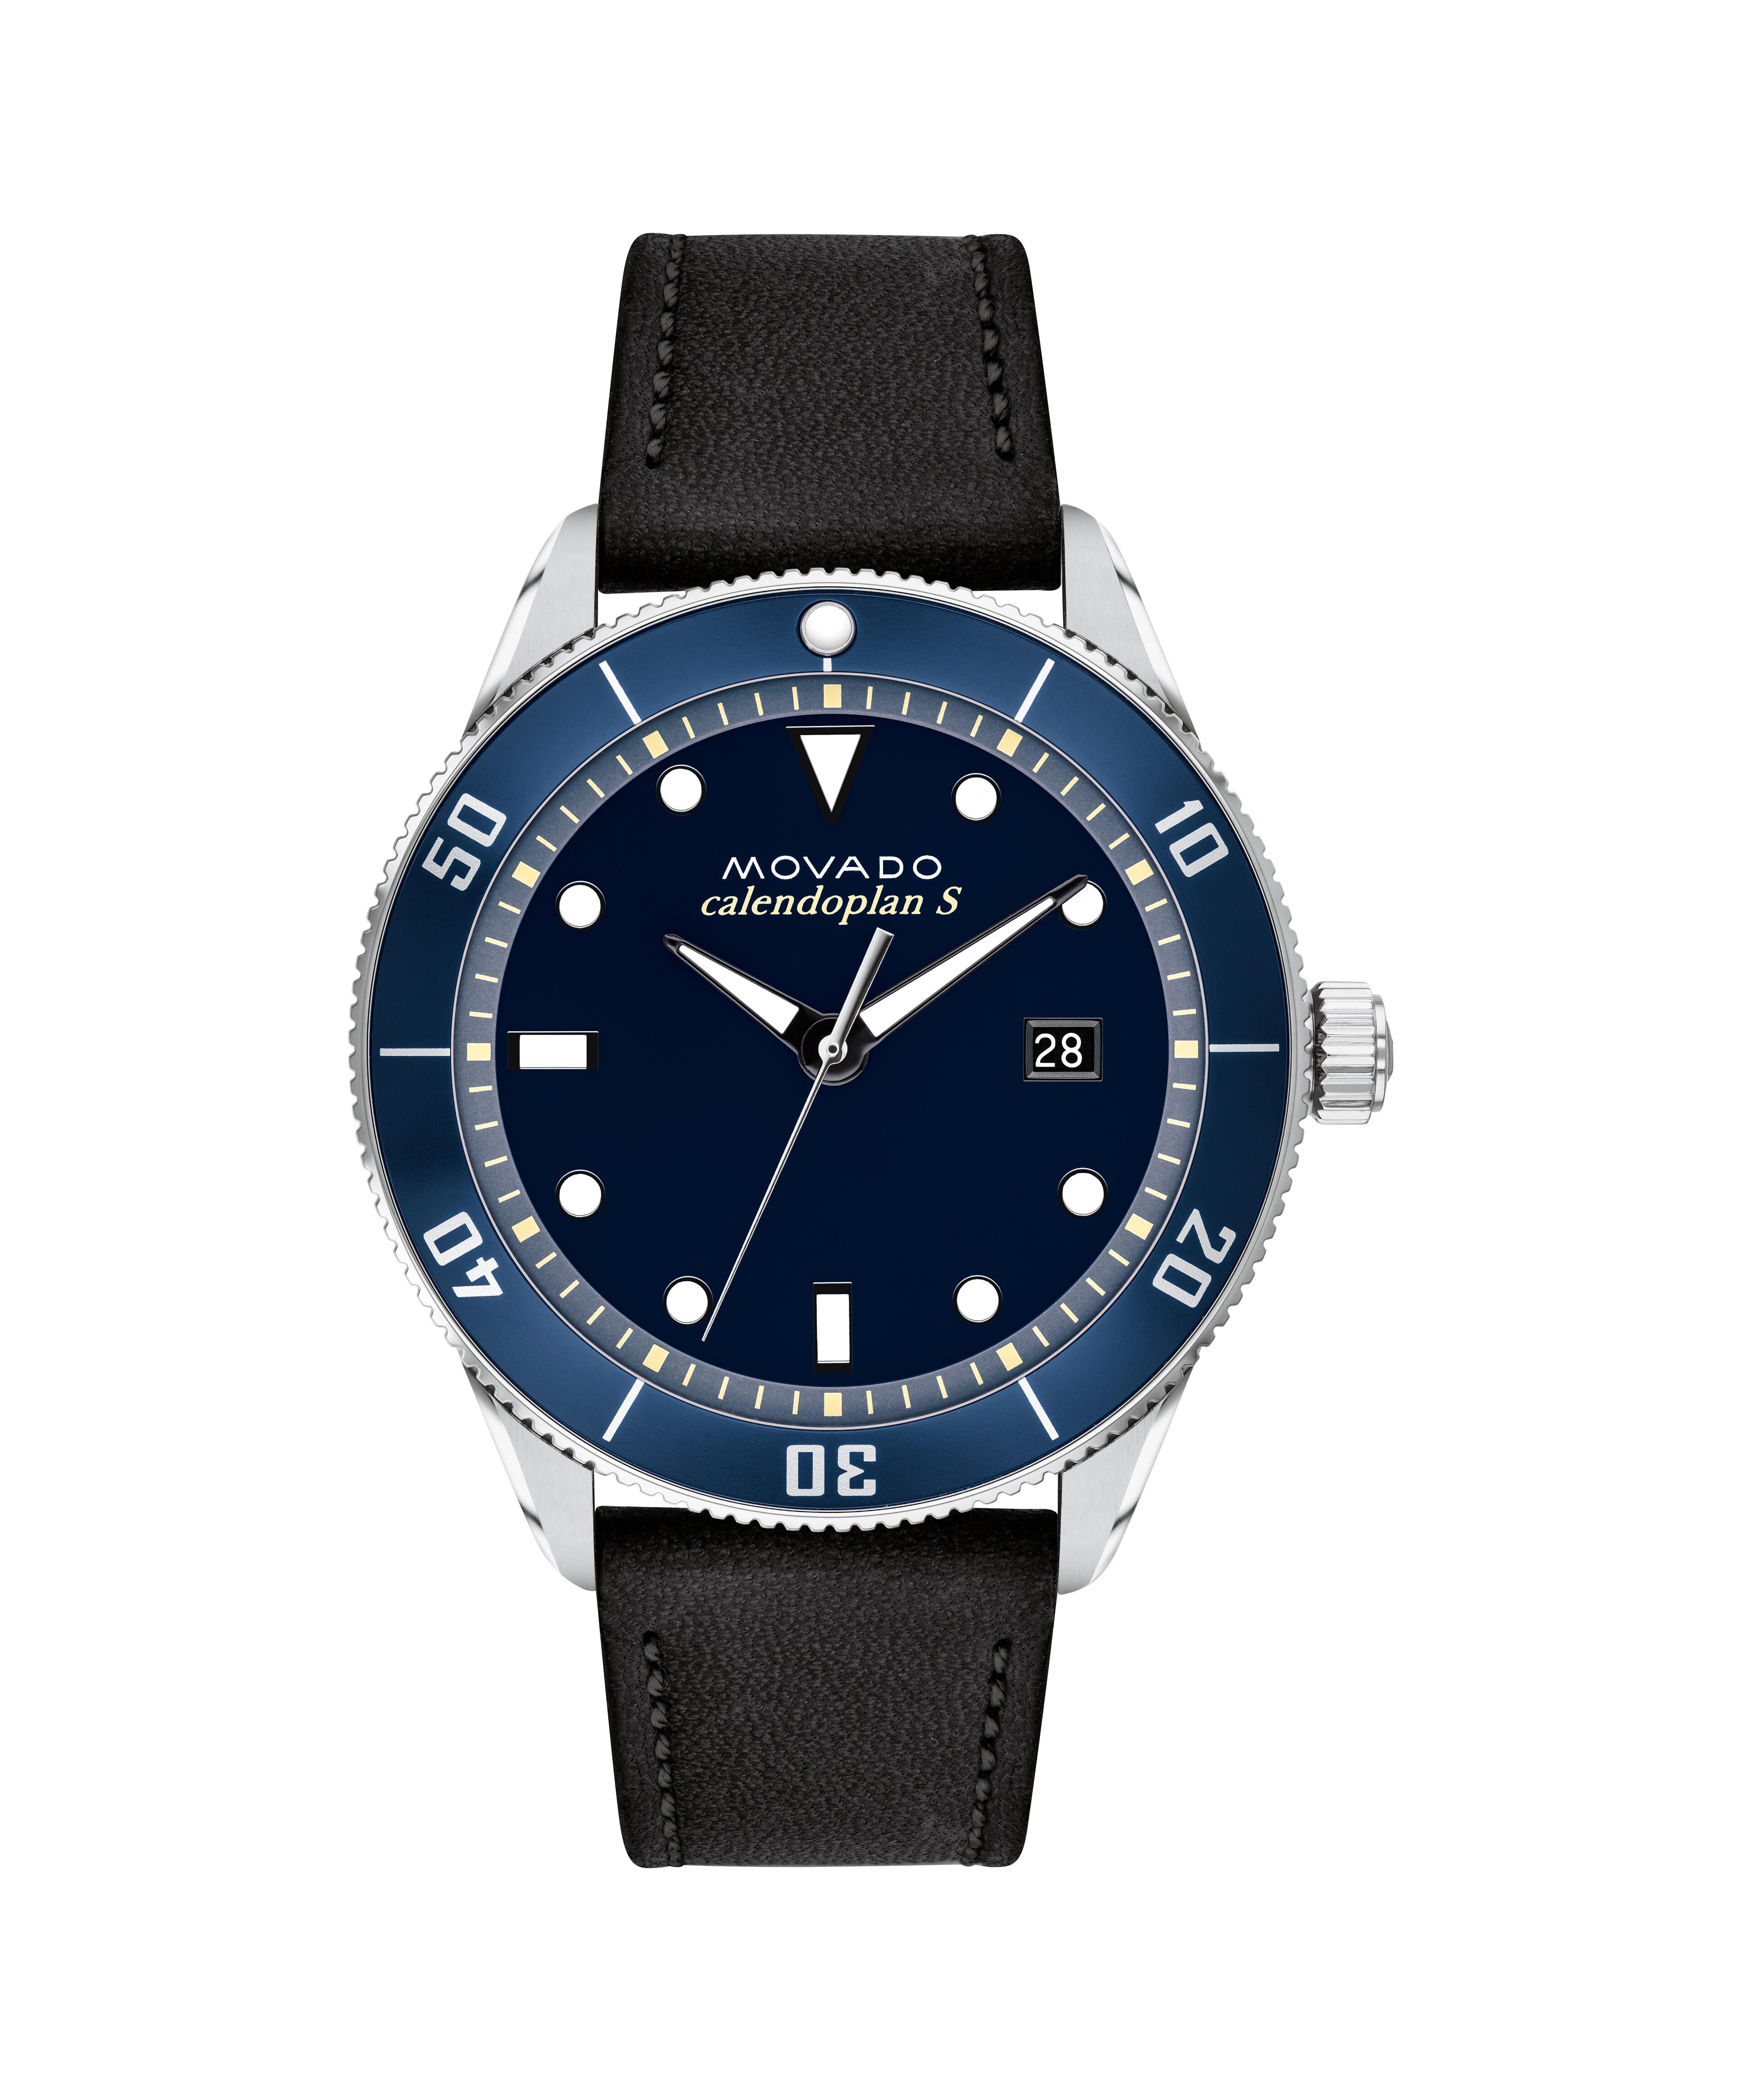 Cartier Watch Replica Dhgate